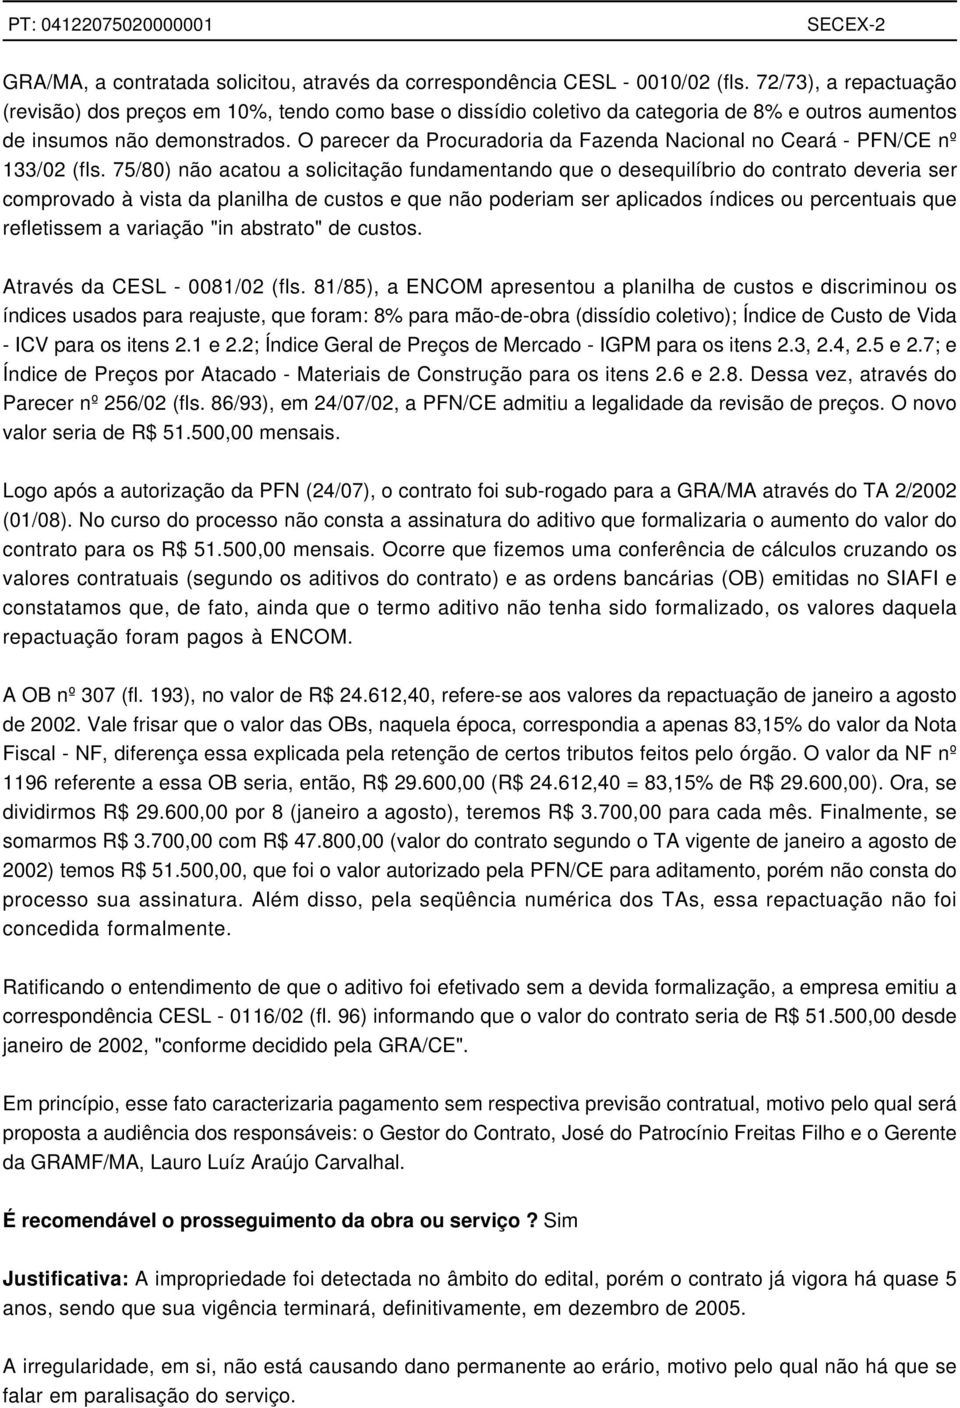 O parecer da Procuradoria da Fazenda Nacional no Ceará - PFN/CE nº 133/02 (fls.